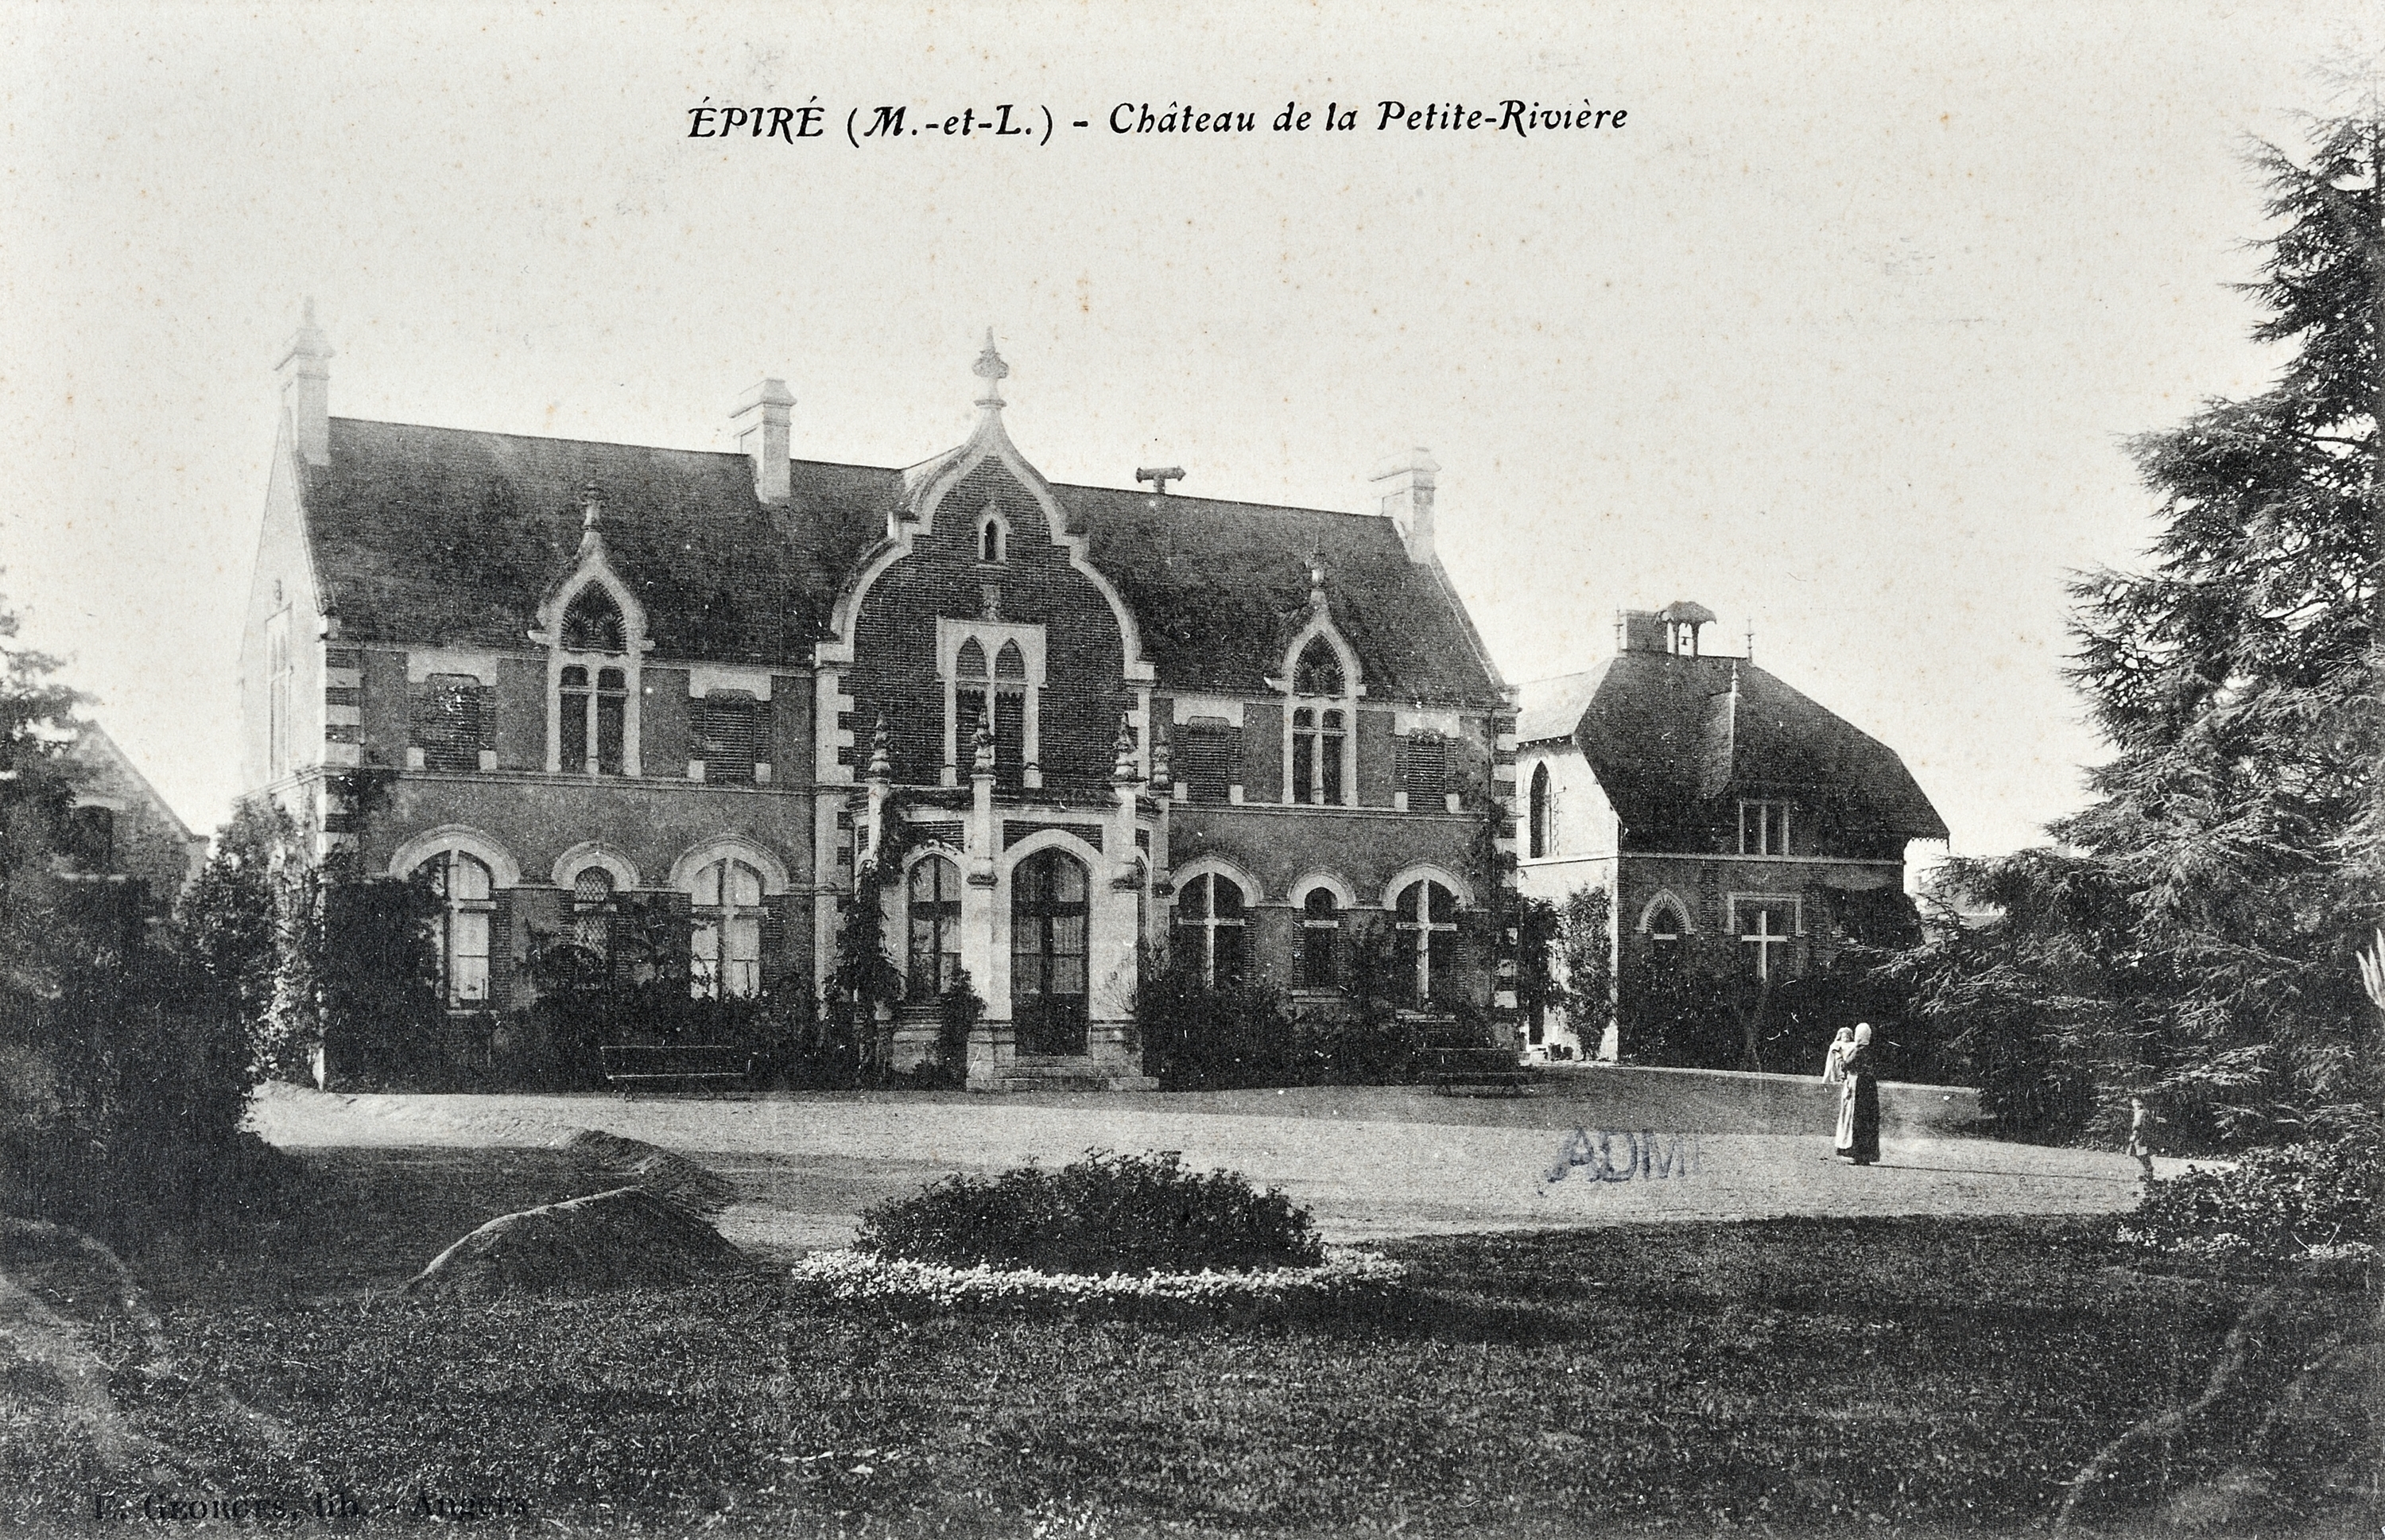 Château de la Petite-Rivière